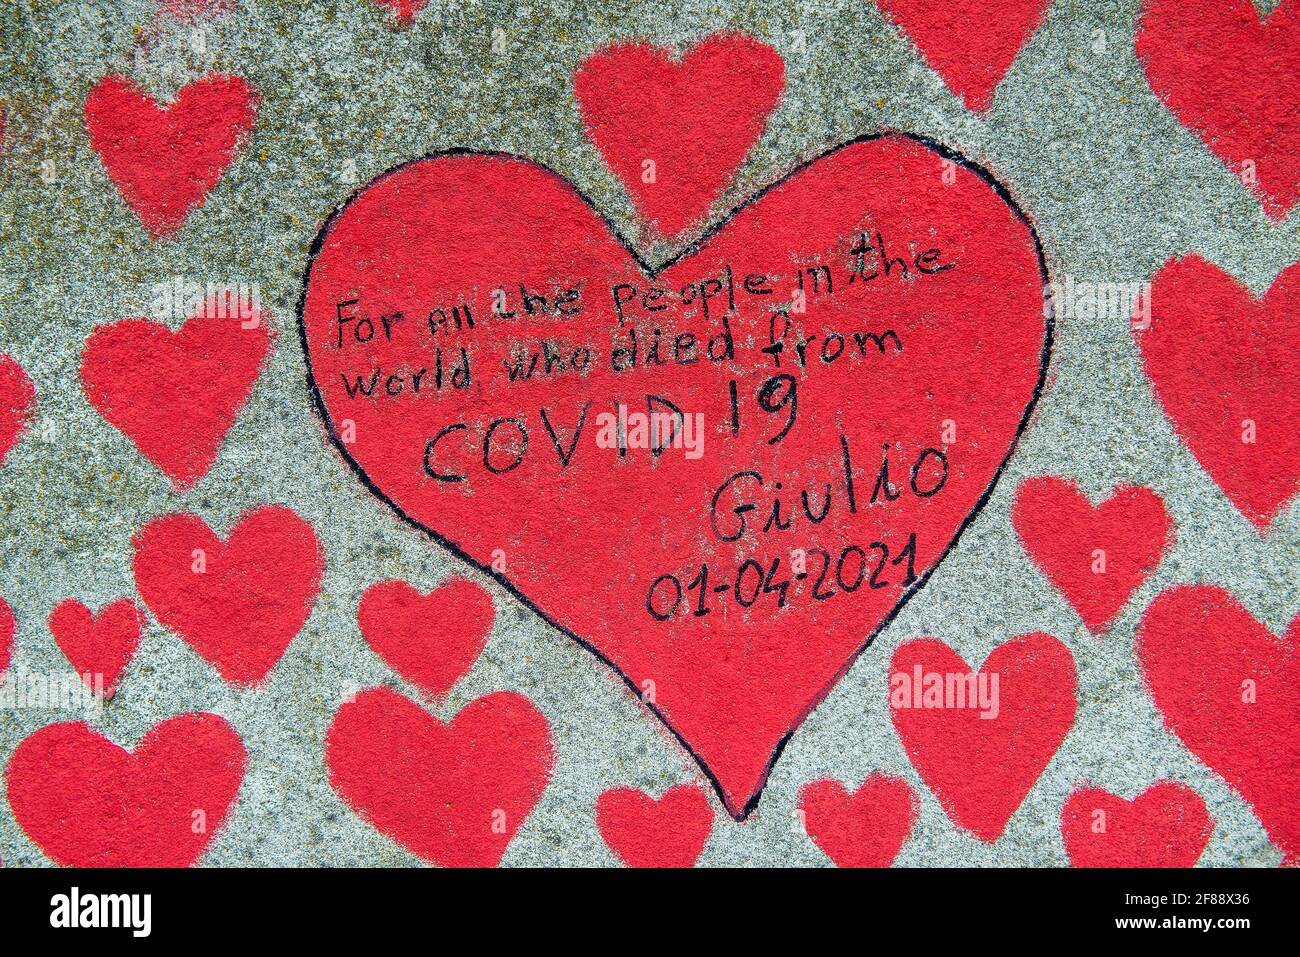 Le mur commémoratif national Covid de Southbank, couvert de milliers de coeurs dessinés à la main, en mémoire de toutes les vies perdues à la pandémie COVID-19. Banque D'Images